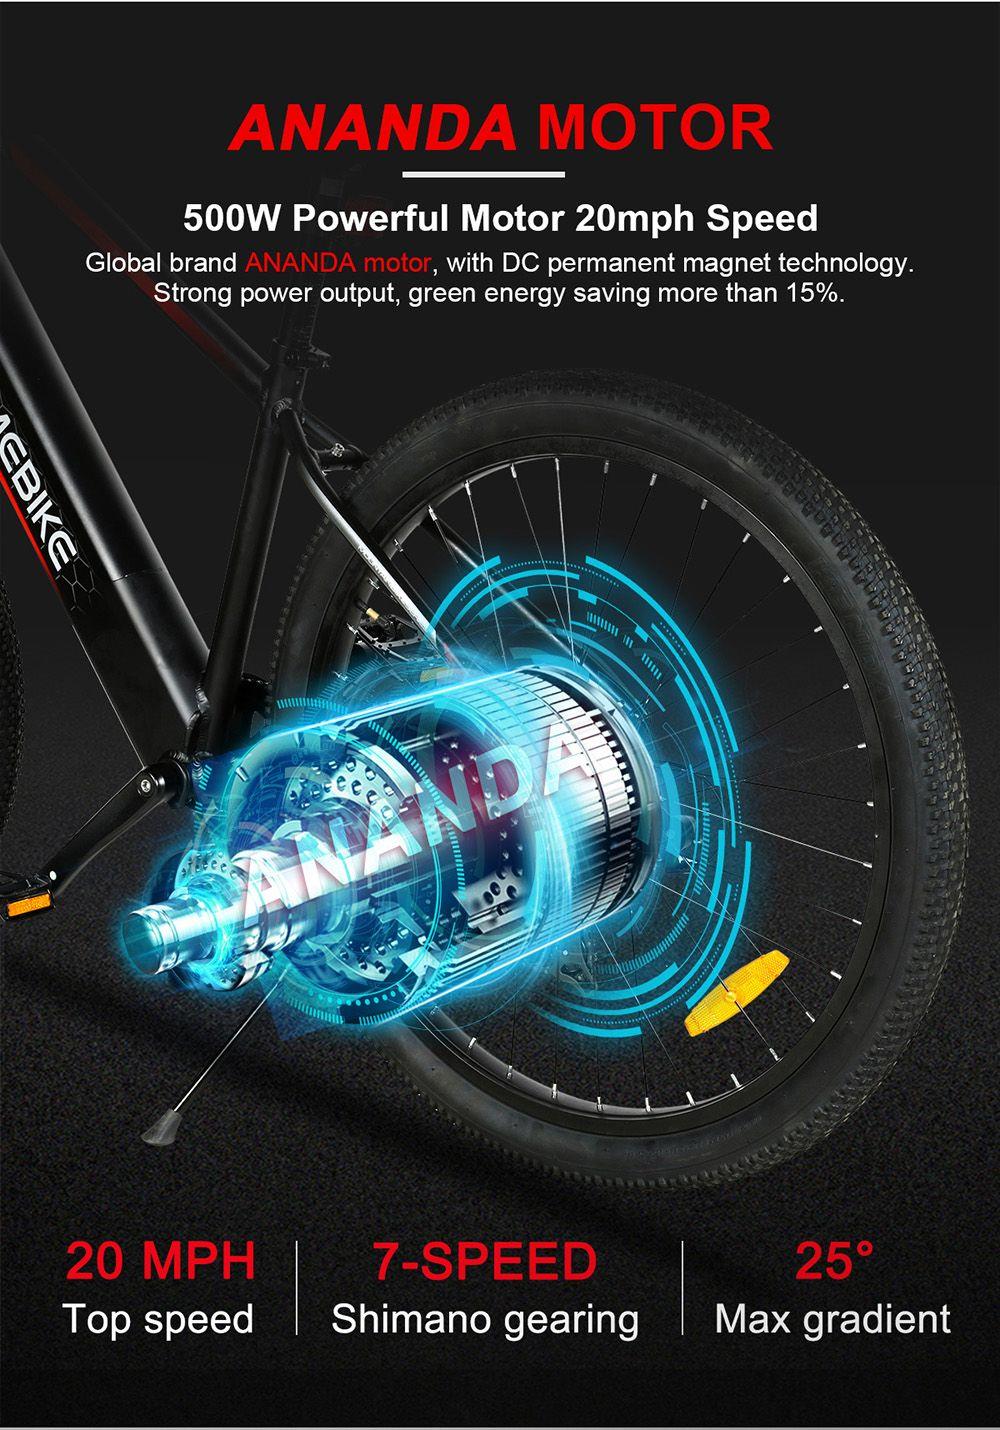 Ηλεκτρικό ποδήλατο SAMEBIKE MY275 10,4Ah Κινητήρας 500W 48V 27,5 ίντσες Λευκό